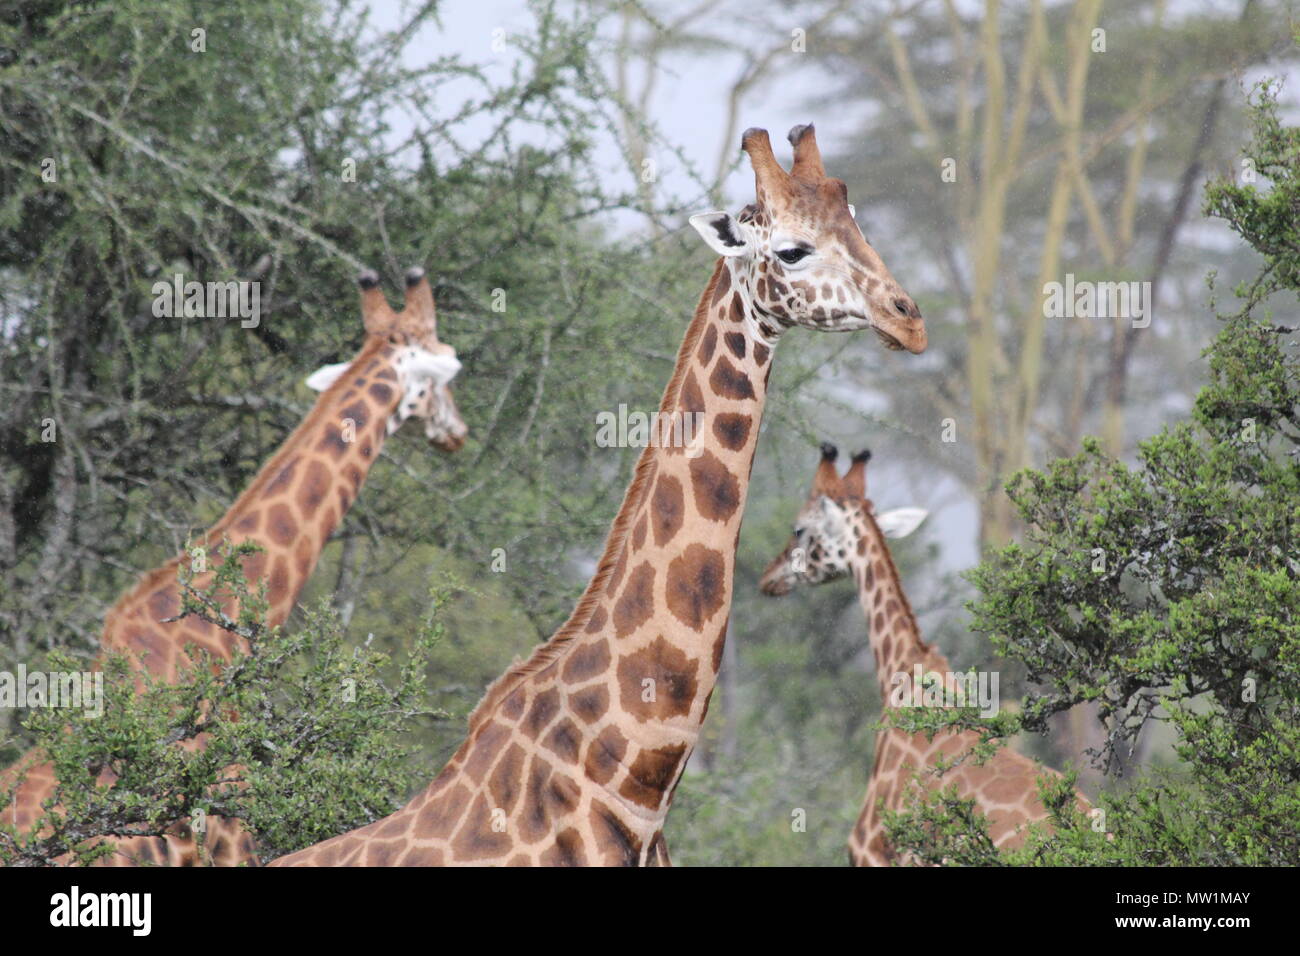 Grupo de jirafas entre los árboles Foto de stock